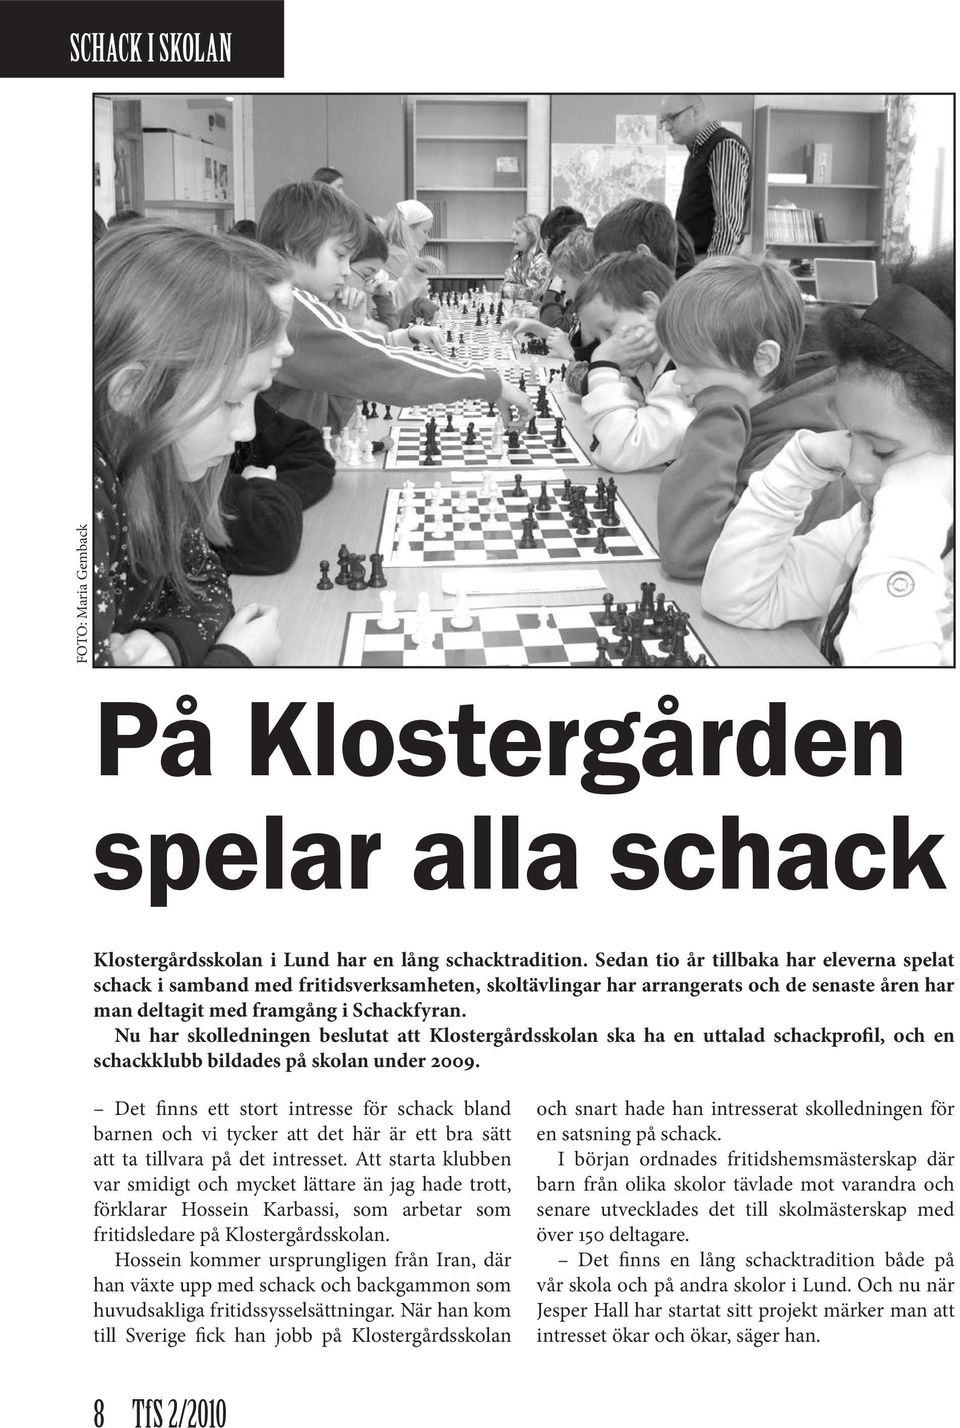 Nu har skolledningen beslutat att Klostergårdsskolan ska ha en uttalad schackprofil, och en schackklubb bildades på skolan under 2009.